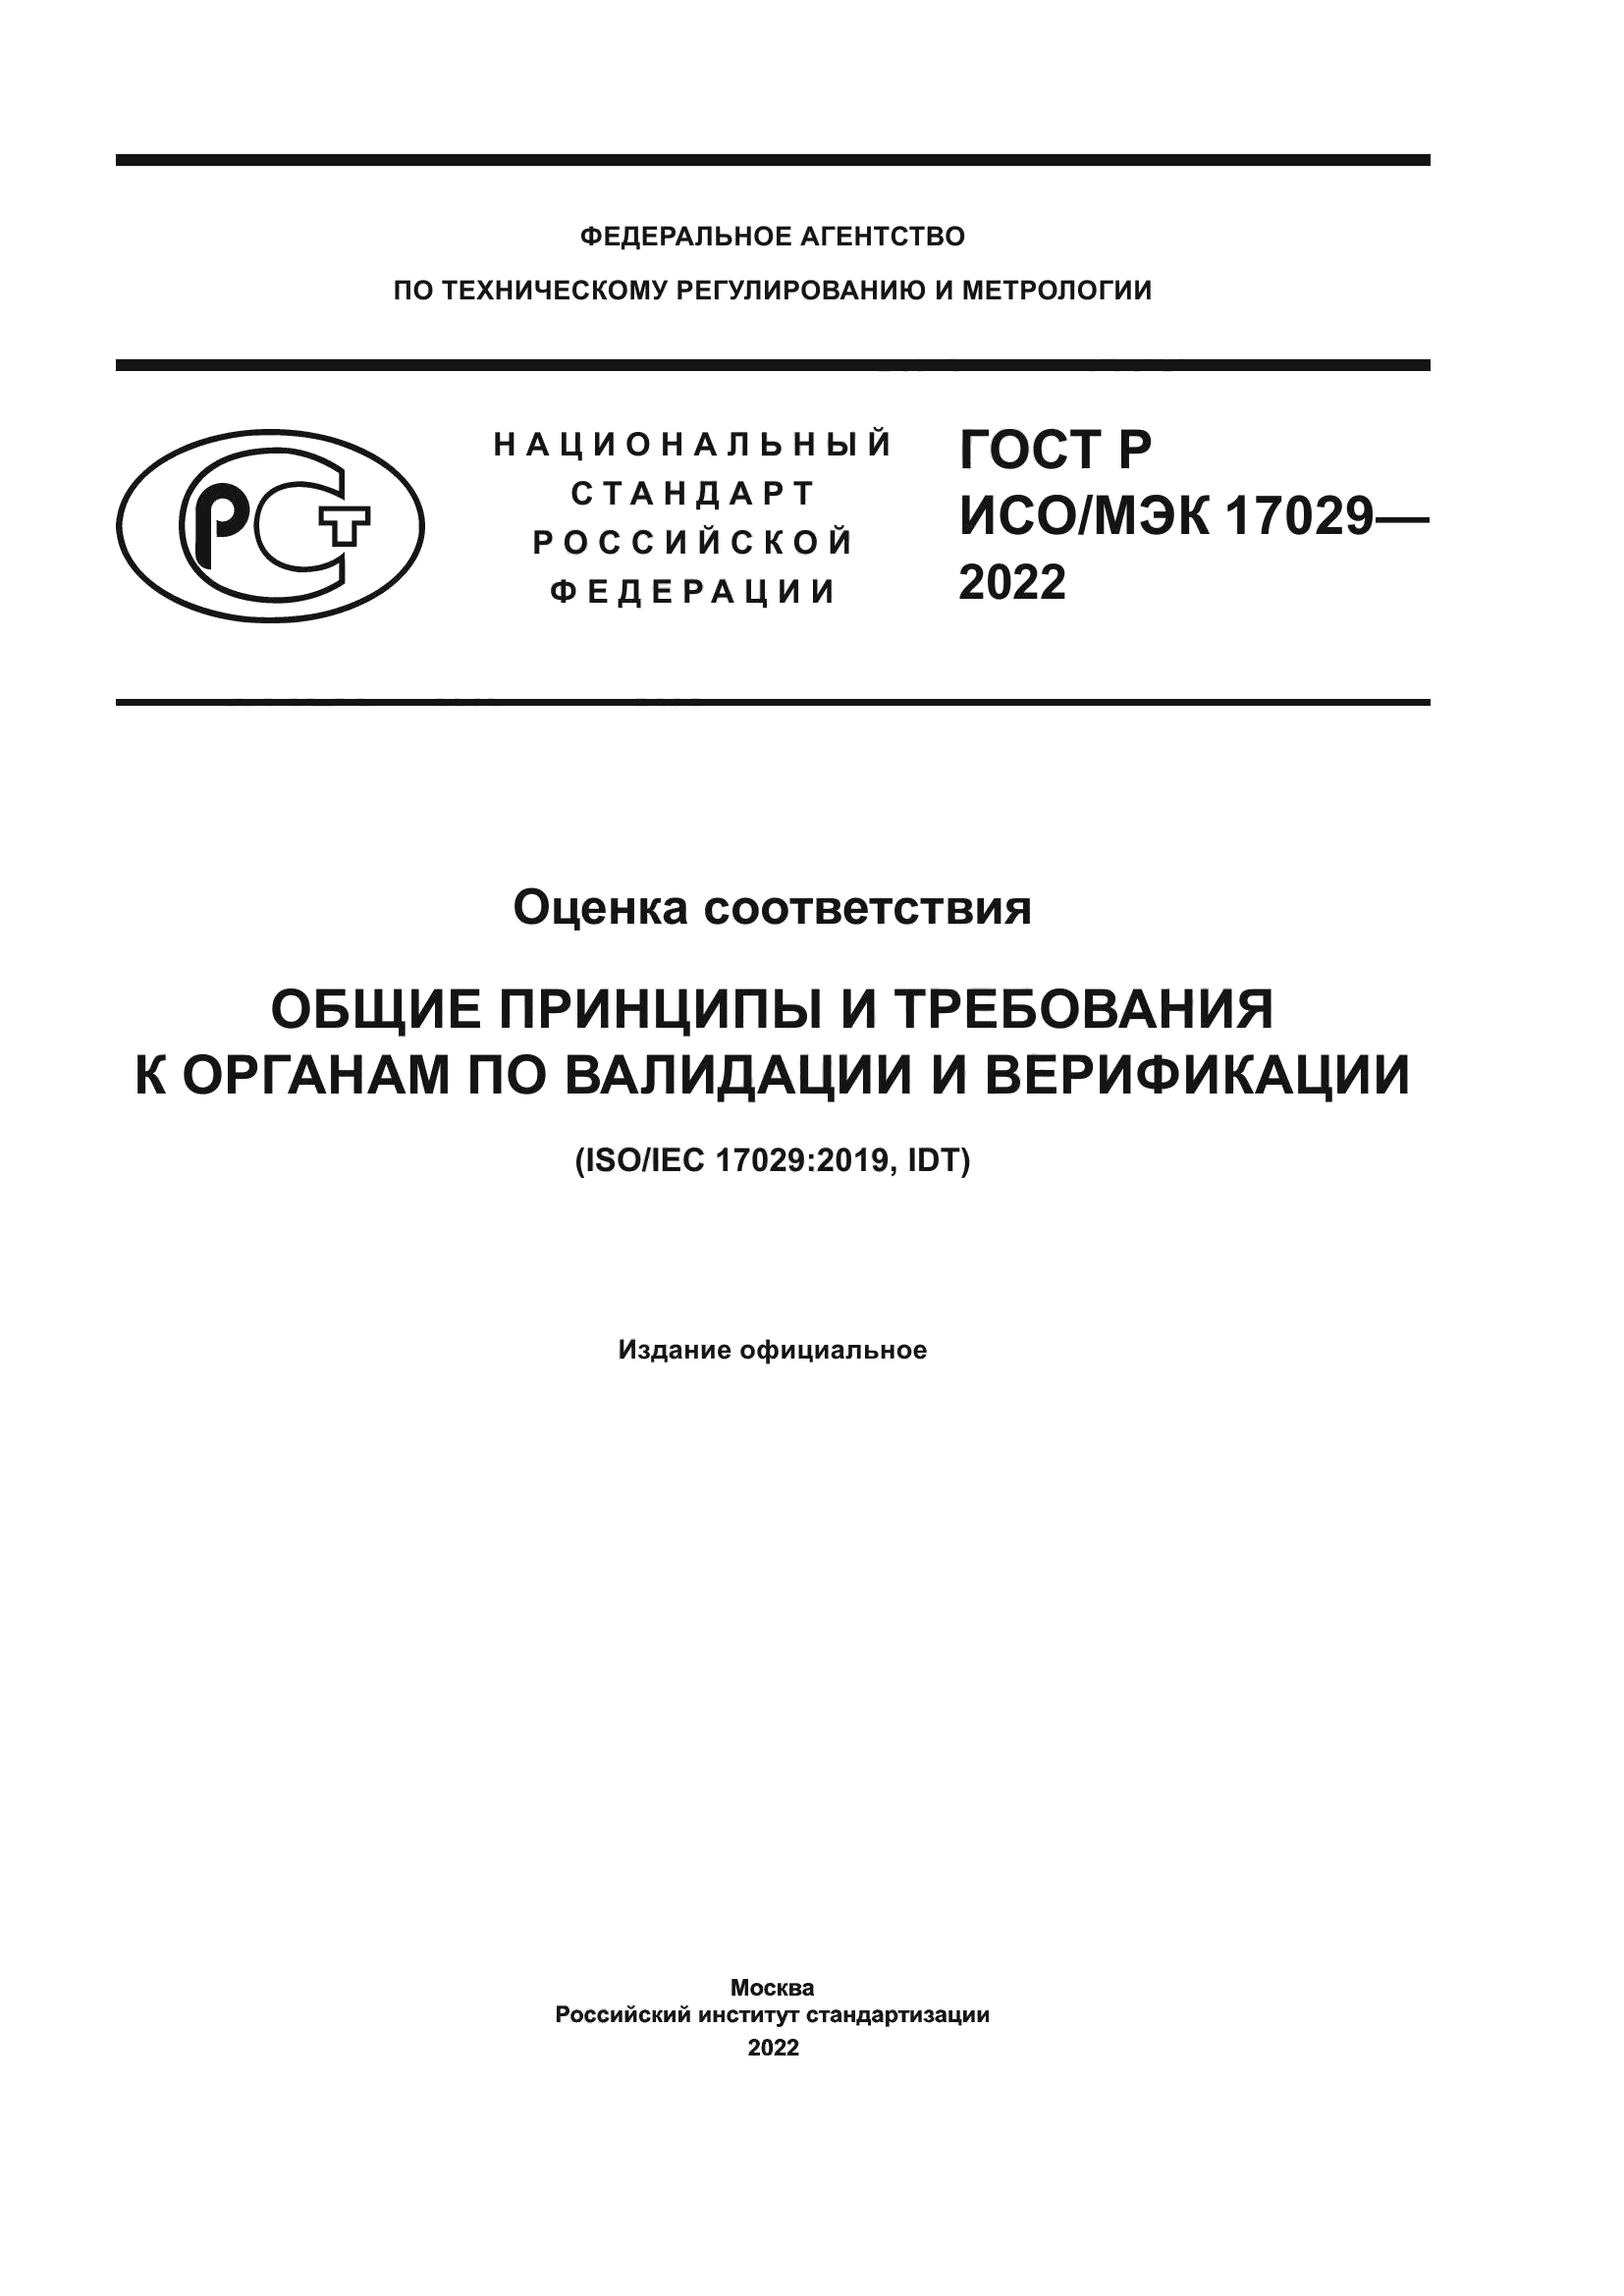 ГОСТ Р ИСО/МЭК 17029-2022